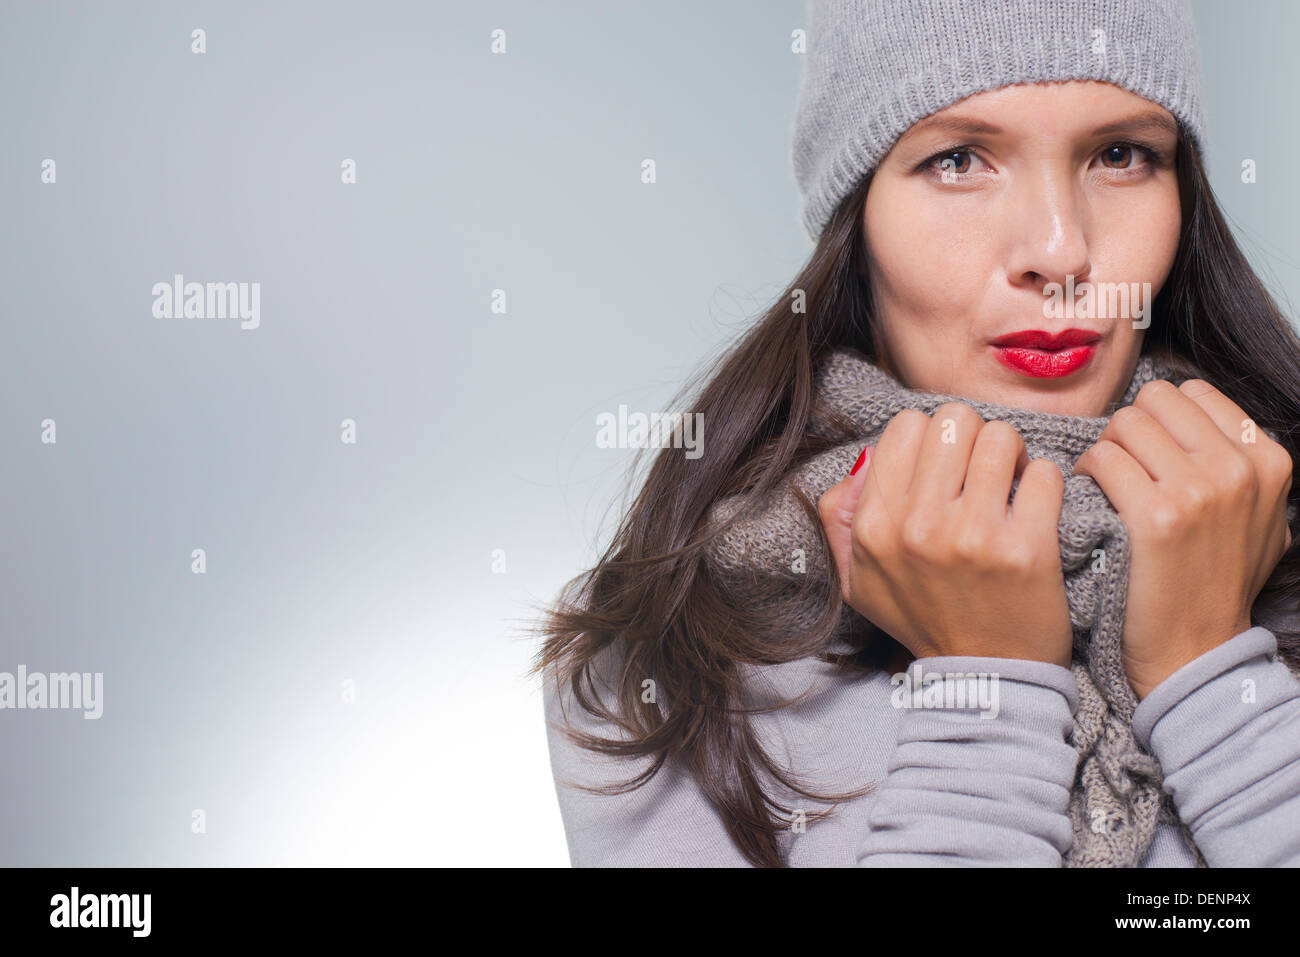 Piuttosto giovane donna in inverno fashion cuddling giù all'interno di lei di lana grigio in maglia jersey, sciarpa e cappello in un freddo giorno Foto Stock